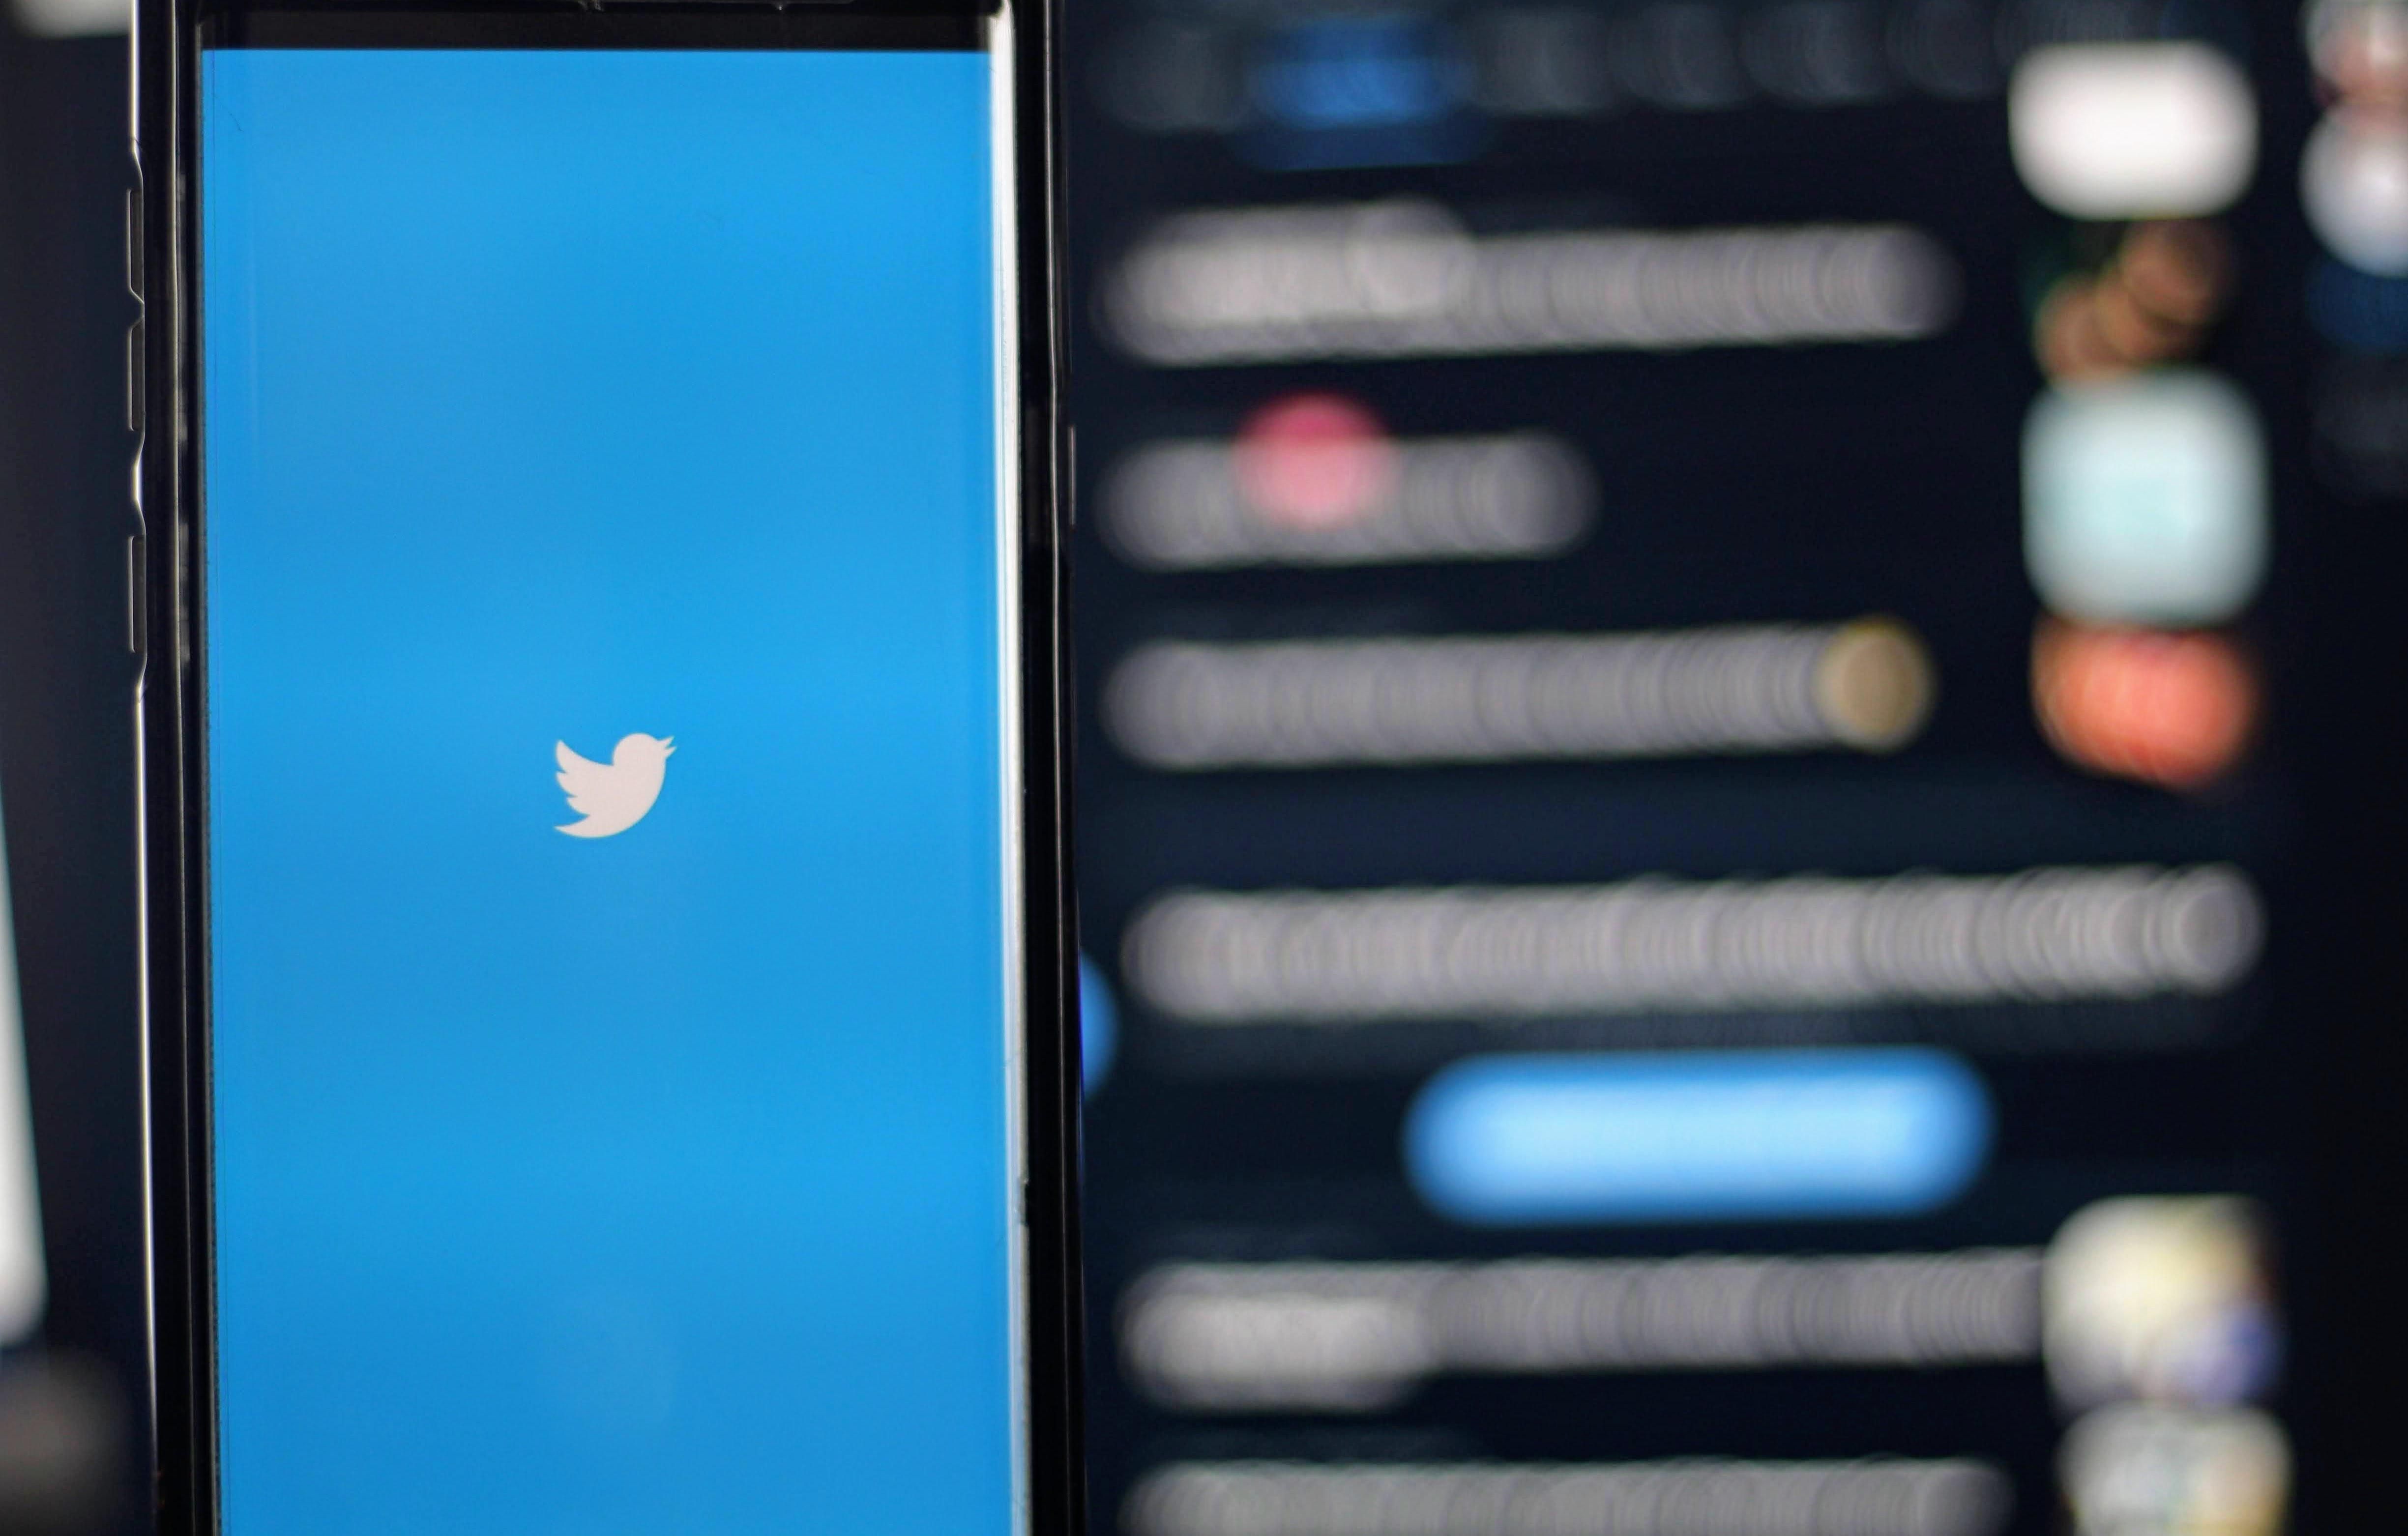 A Twitter fehér madaras logója kék háttérrel tölt egy okostelefonon, a háttér homályos